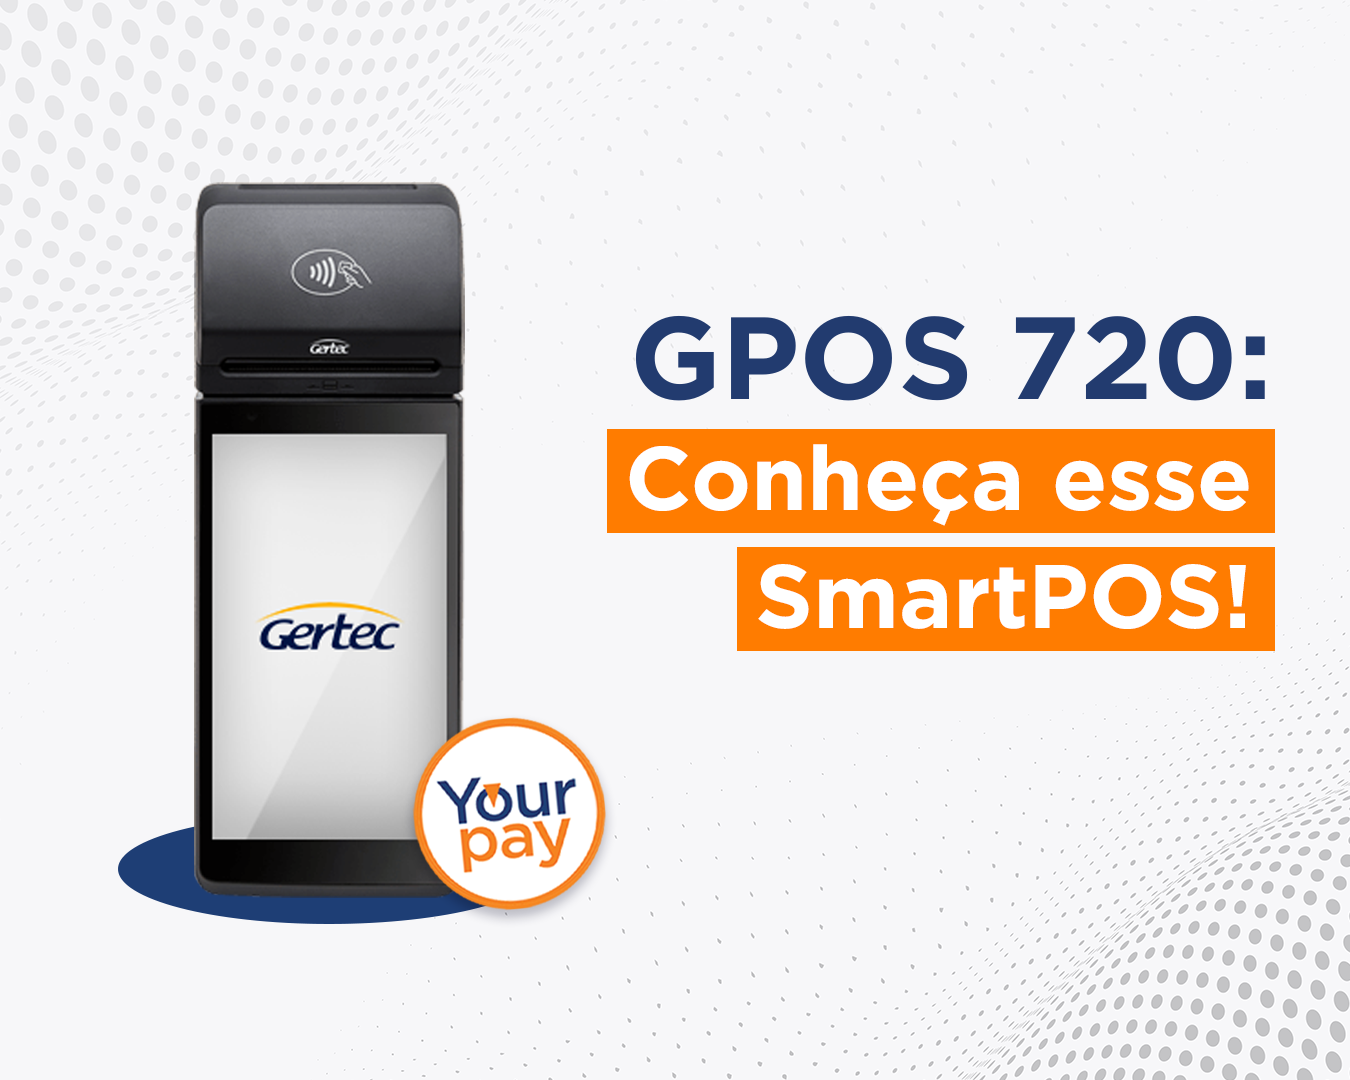 GPOS 720, yourpay, smartpos